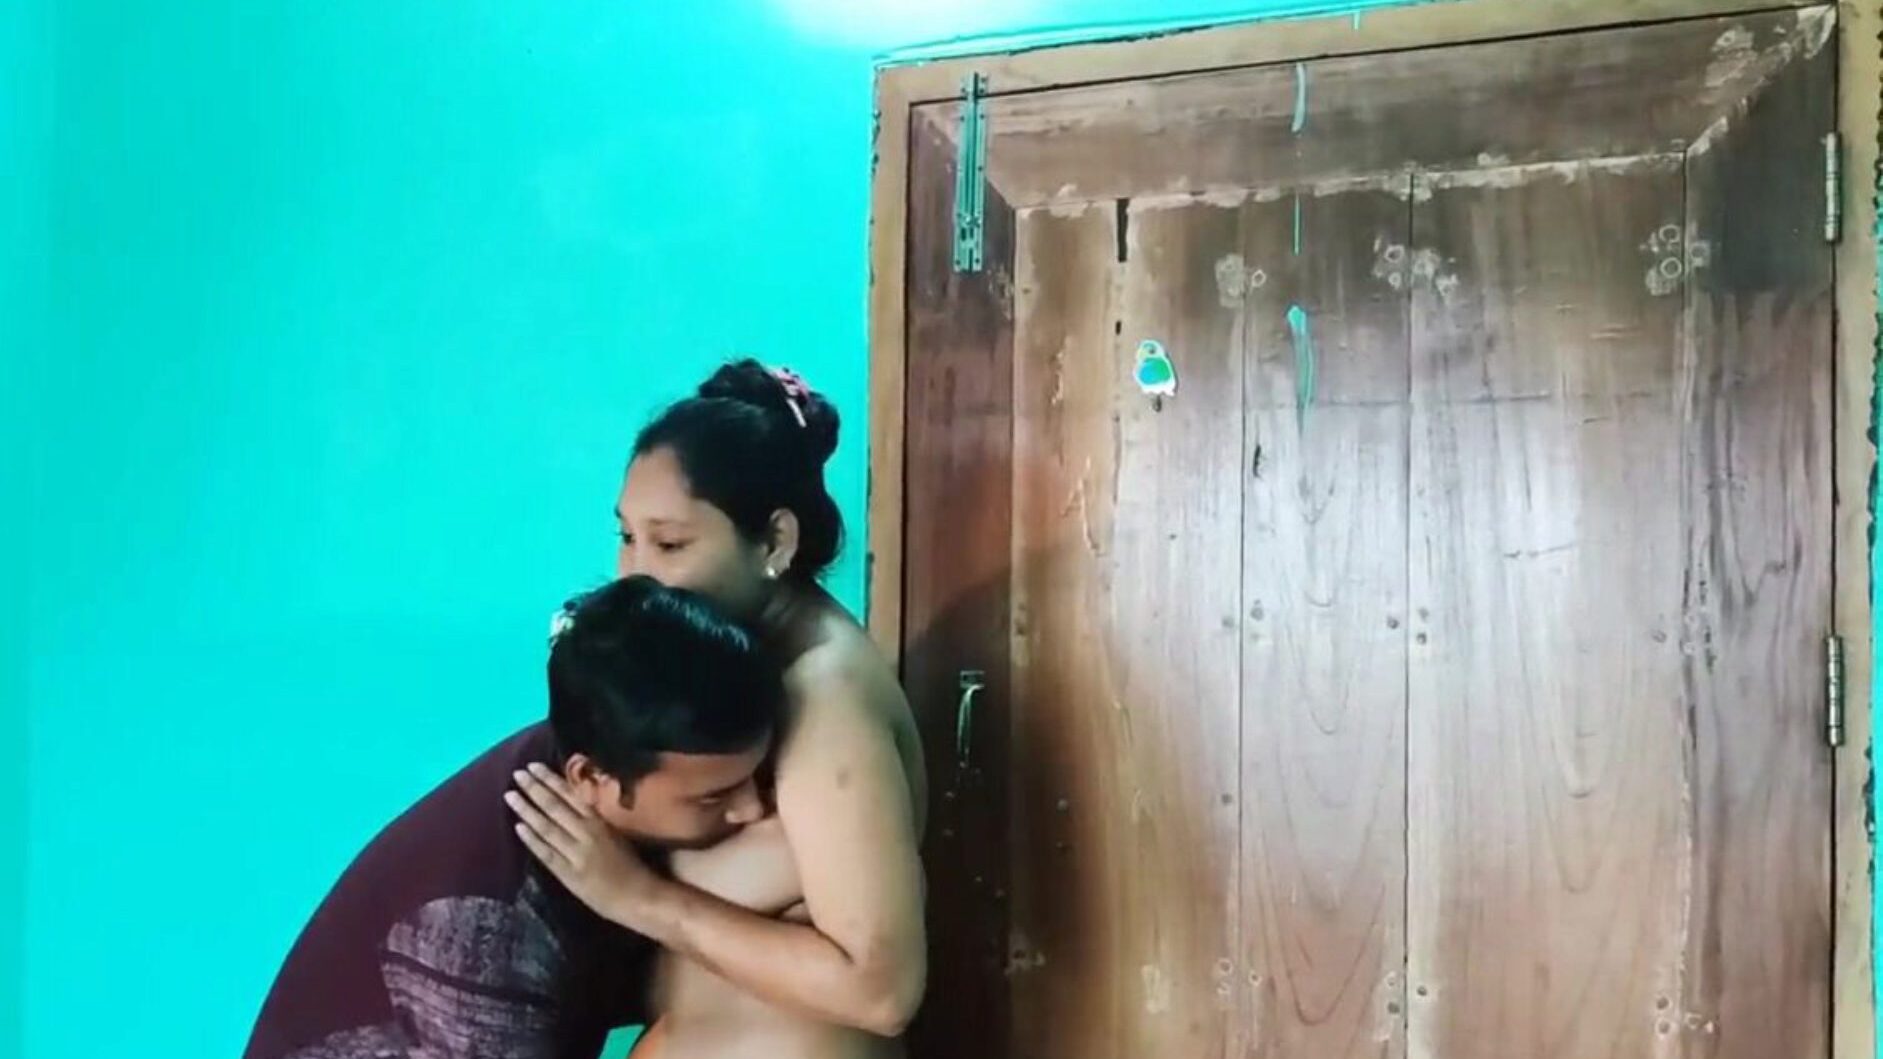 desi bengali sex video gol, porno asiatic gratuit 6c: xhamster ceas desi bengali sex video episod gol pe xhamster, cea mai grasă hd fuck-fest tube resursă web cu tone de free-for-all asiatice xxn sex și pornografie vids